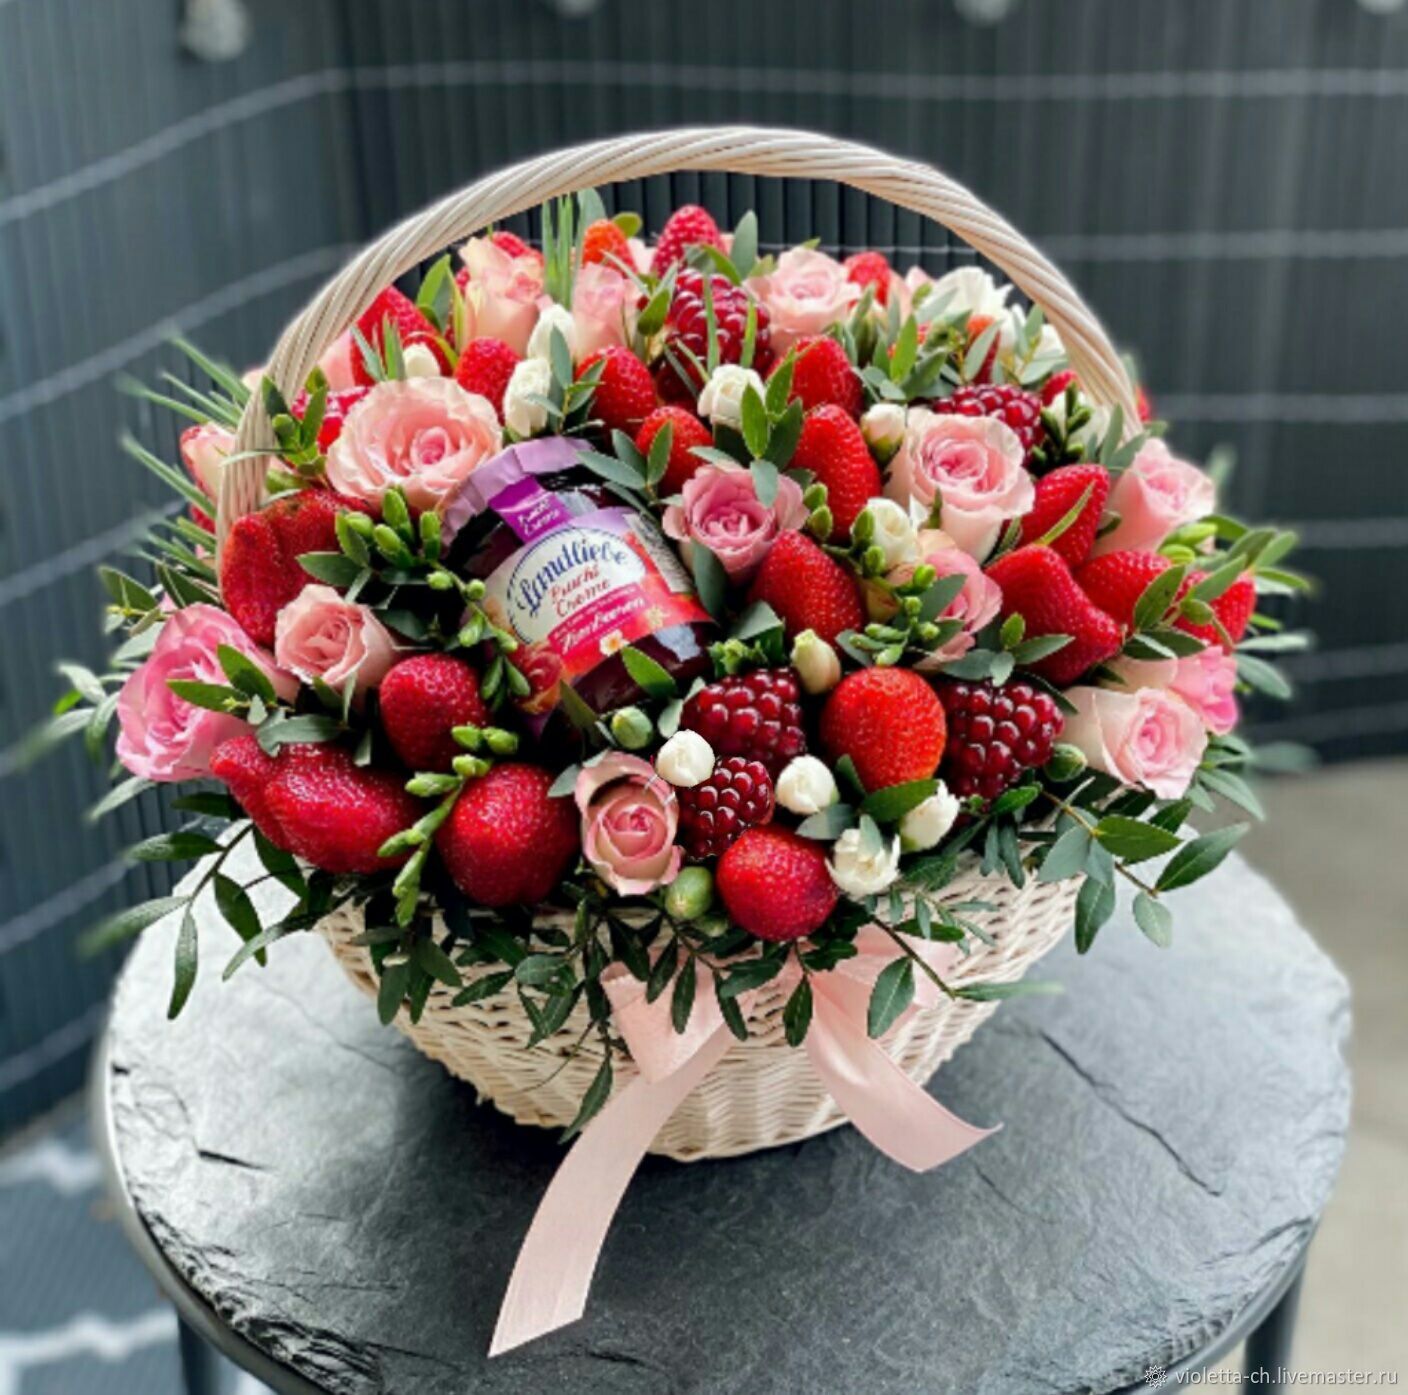 Букет из ягод и цветов